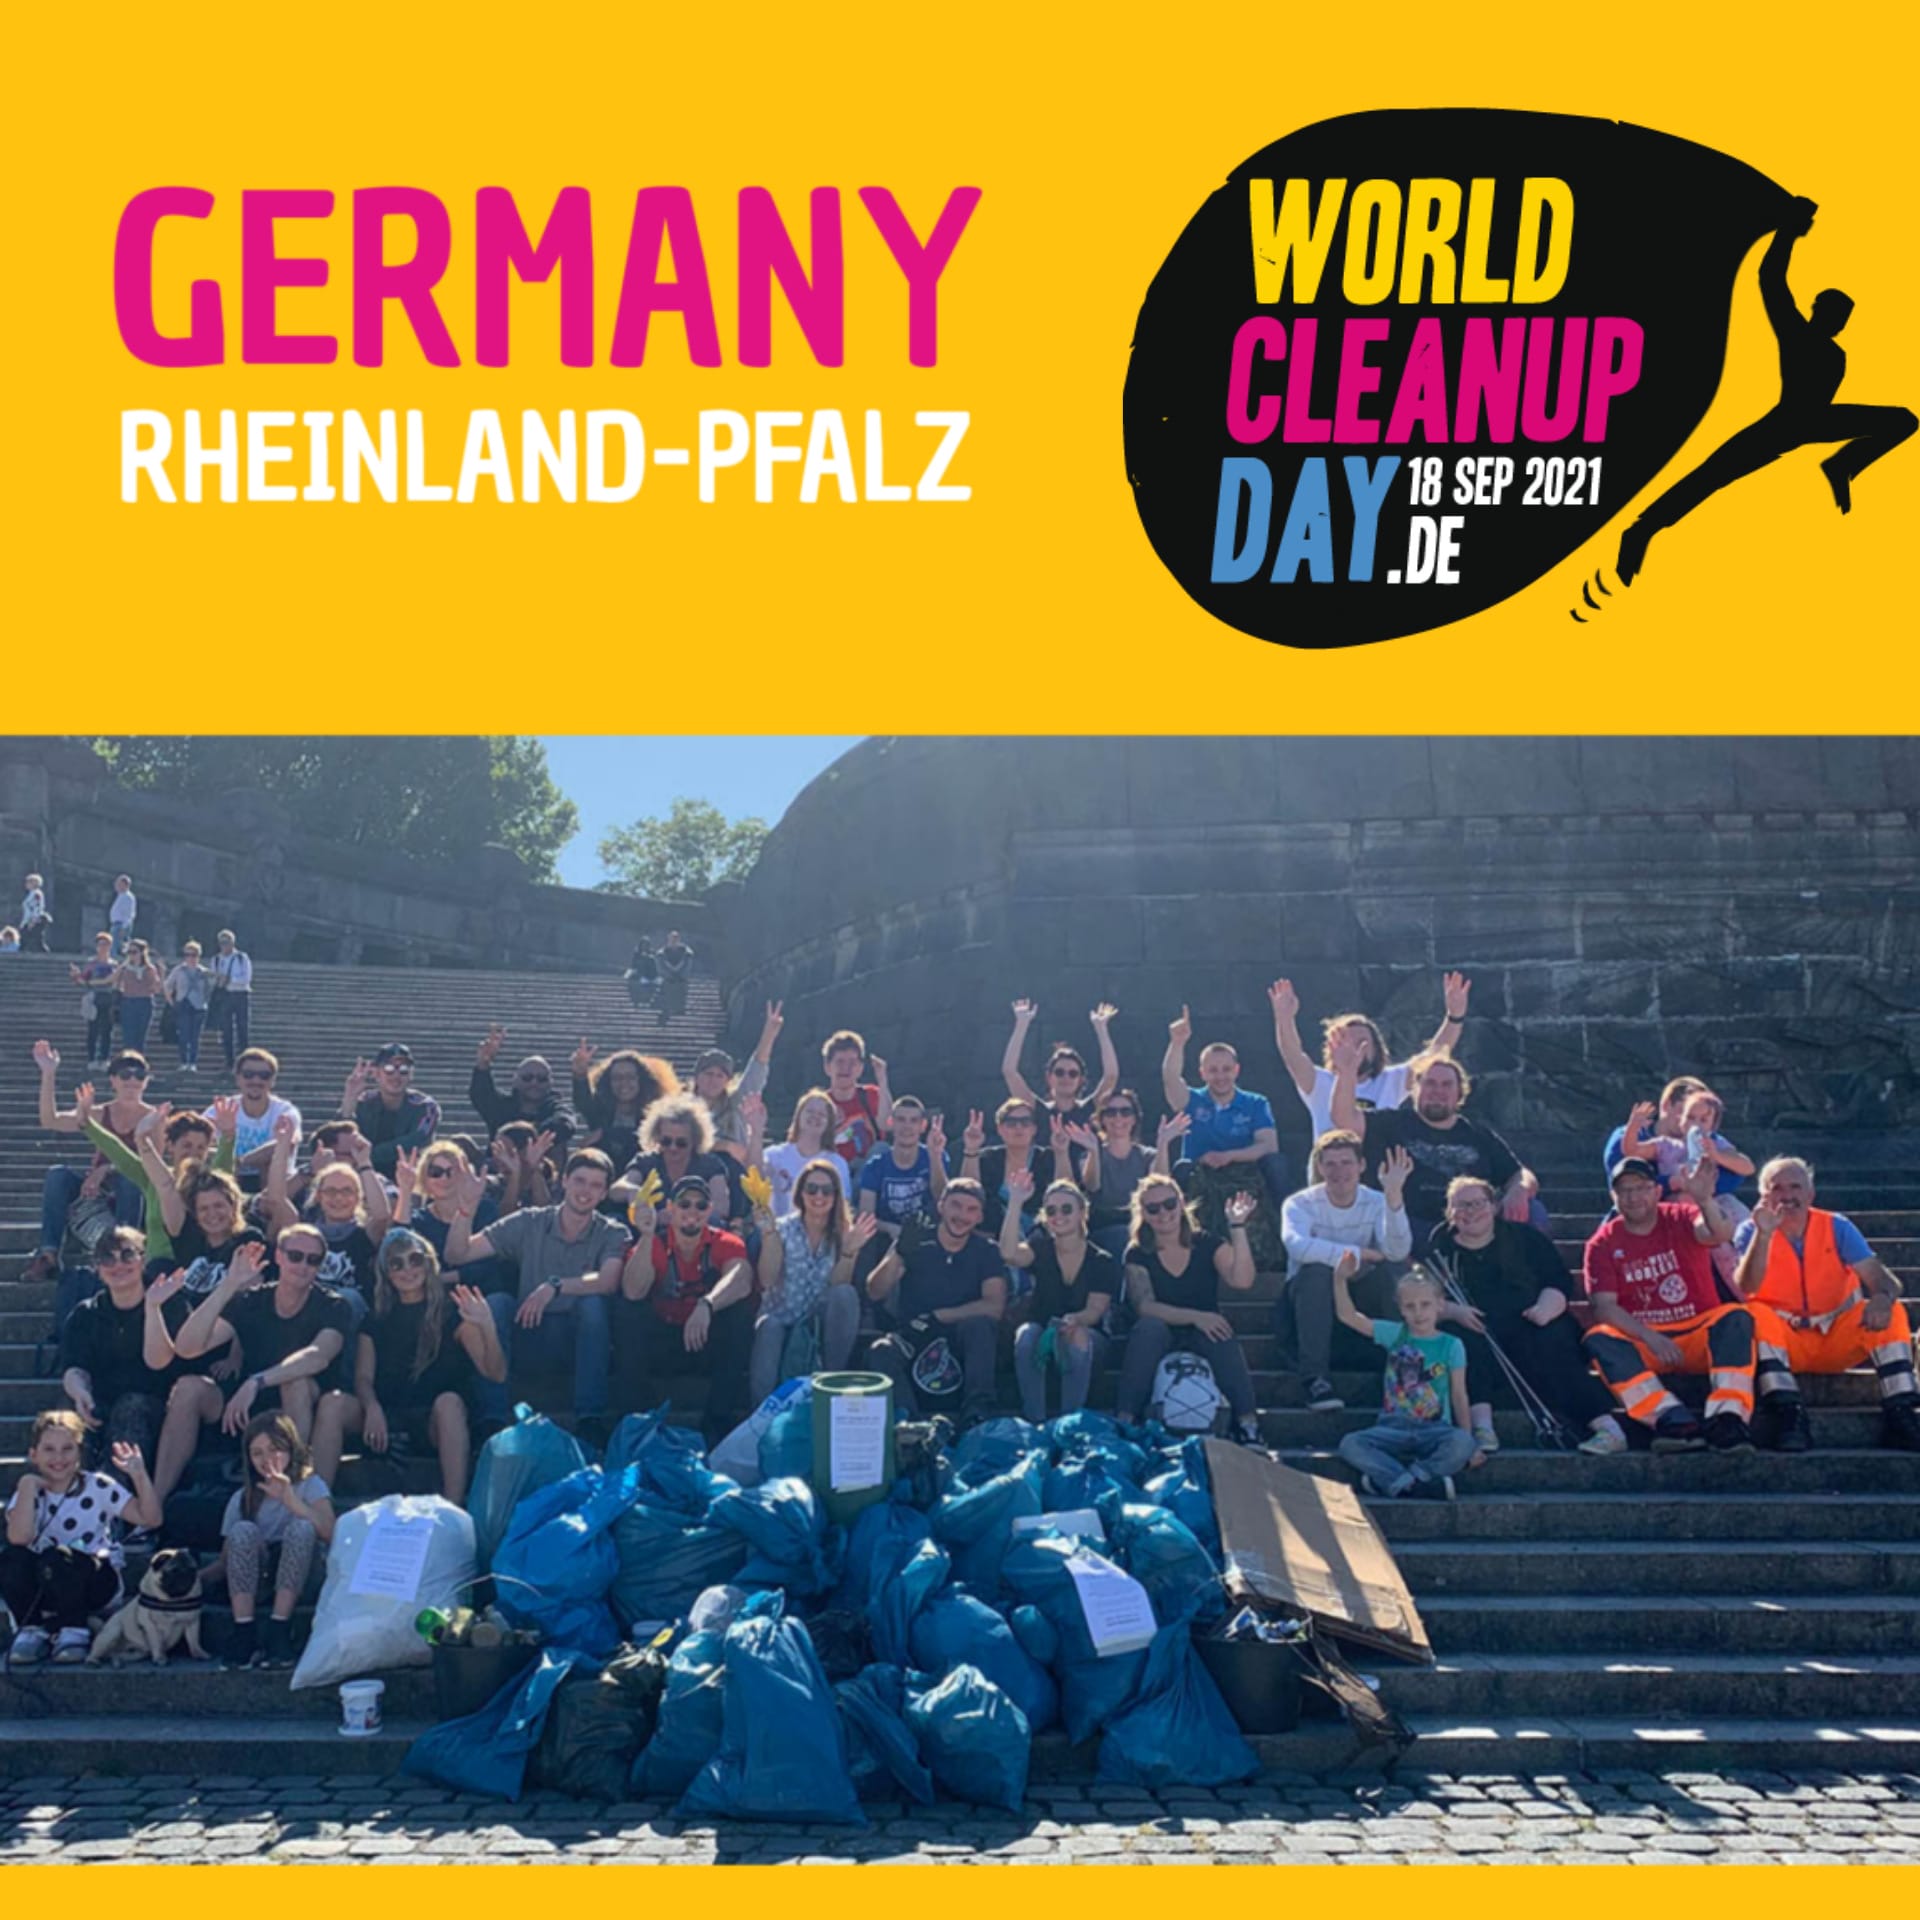 World Cleanup Day in der Gemeinde Rorodt (Rheinland-Pfalz)